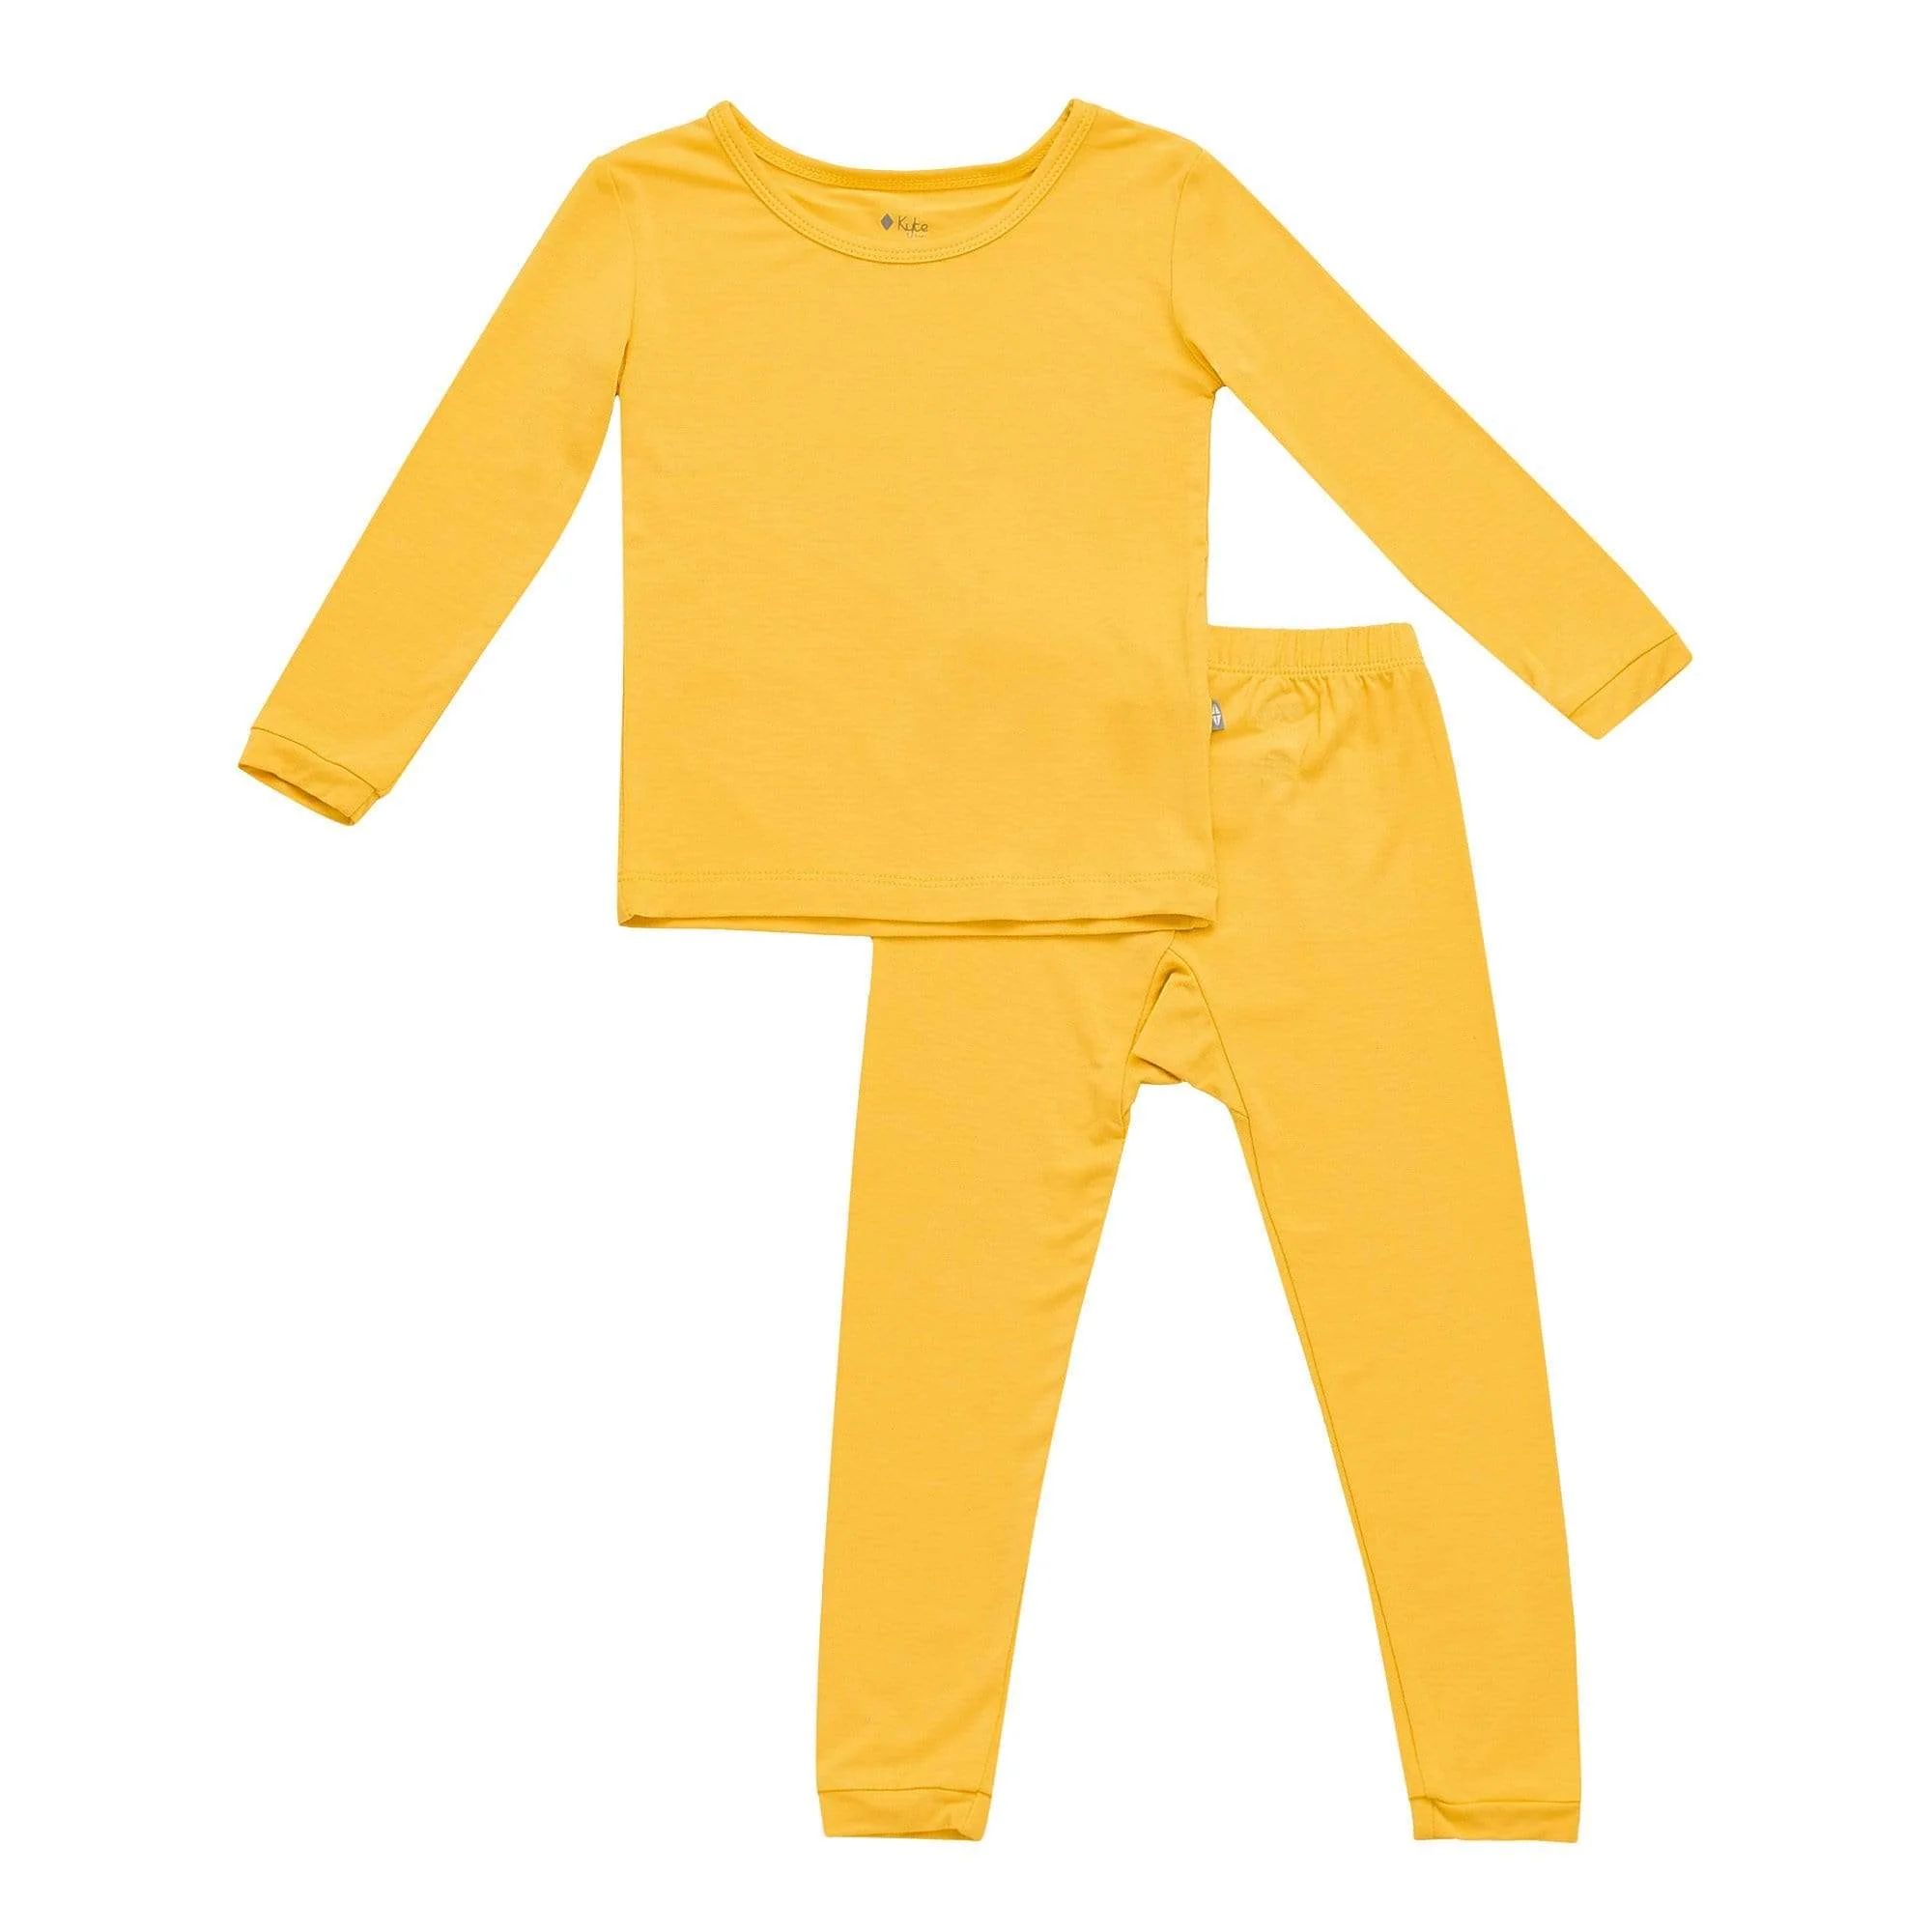 Toddler Pajama Set in Pineapple | Kyte BABY